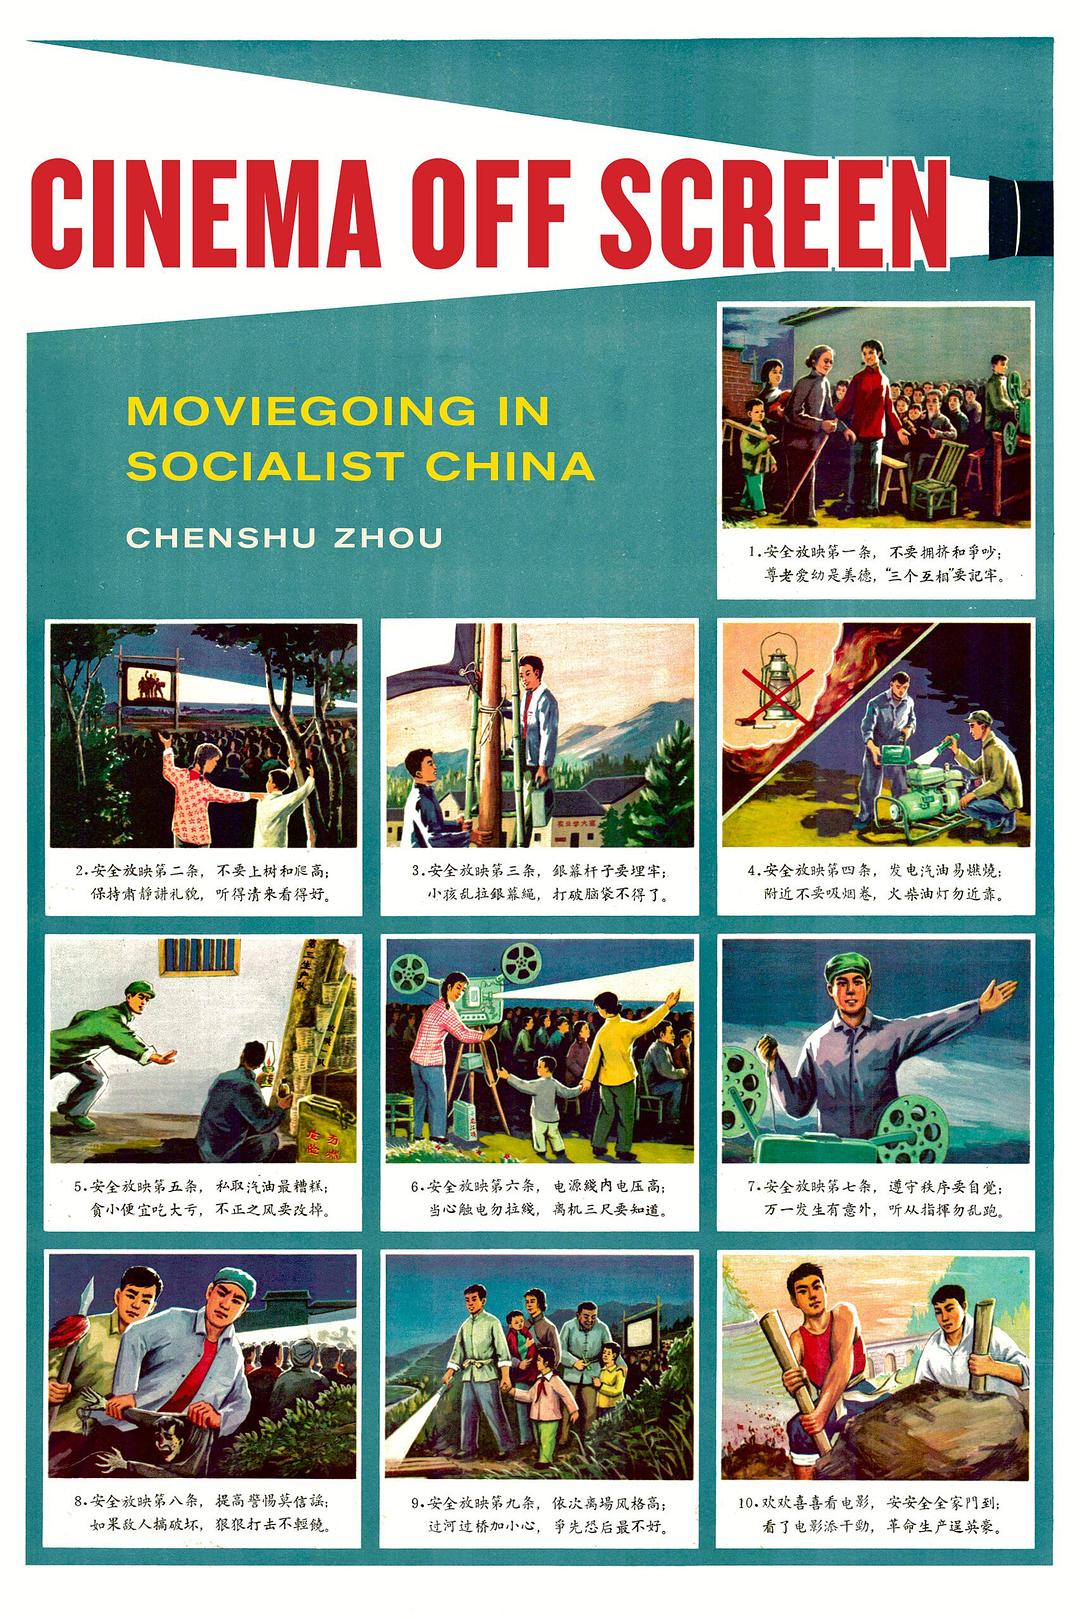 周晨书著《银幕之外：社会主义中国的电影放映》